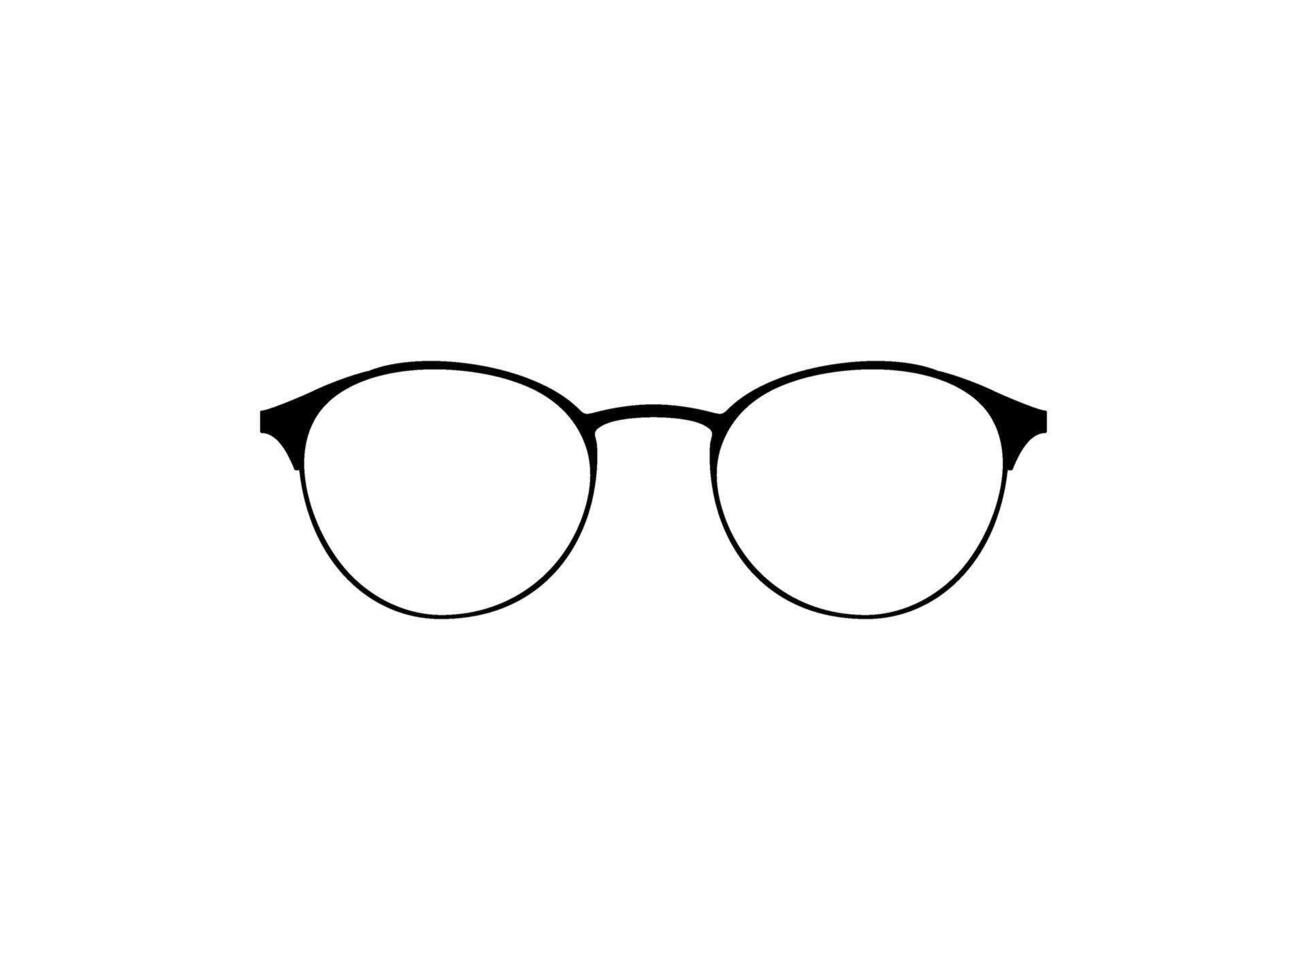 oog bril silhouet, voorkant visie, vlak stijl, kan gebruik voor pictogram, logo gram, appjes, kunst illustratie, sjabloon voor avatar profiel afbeelding, website, of grafisch ontwerp element. vector illustratie